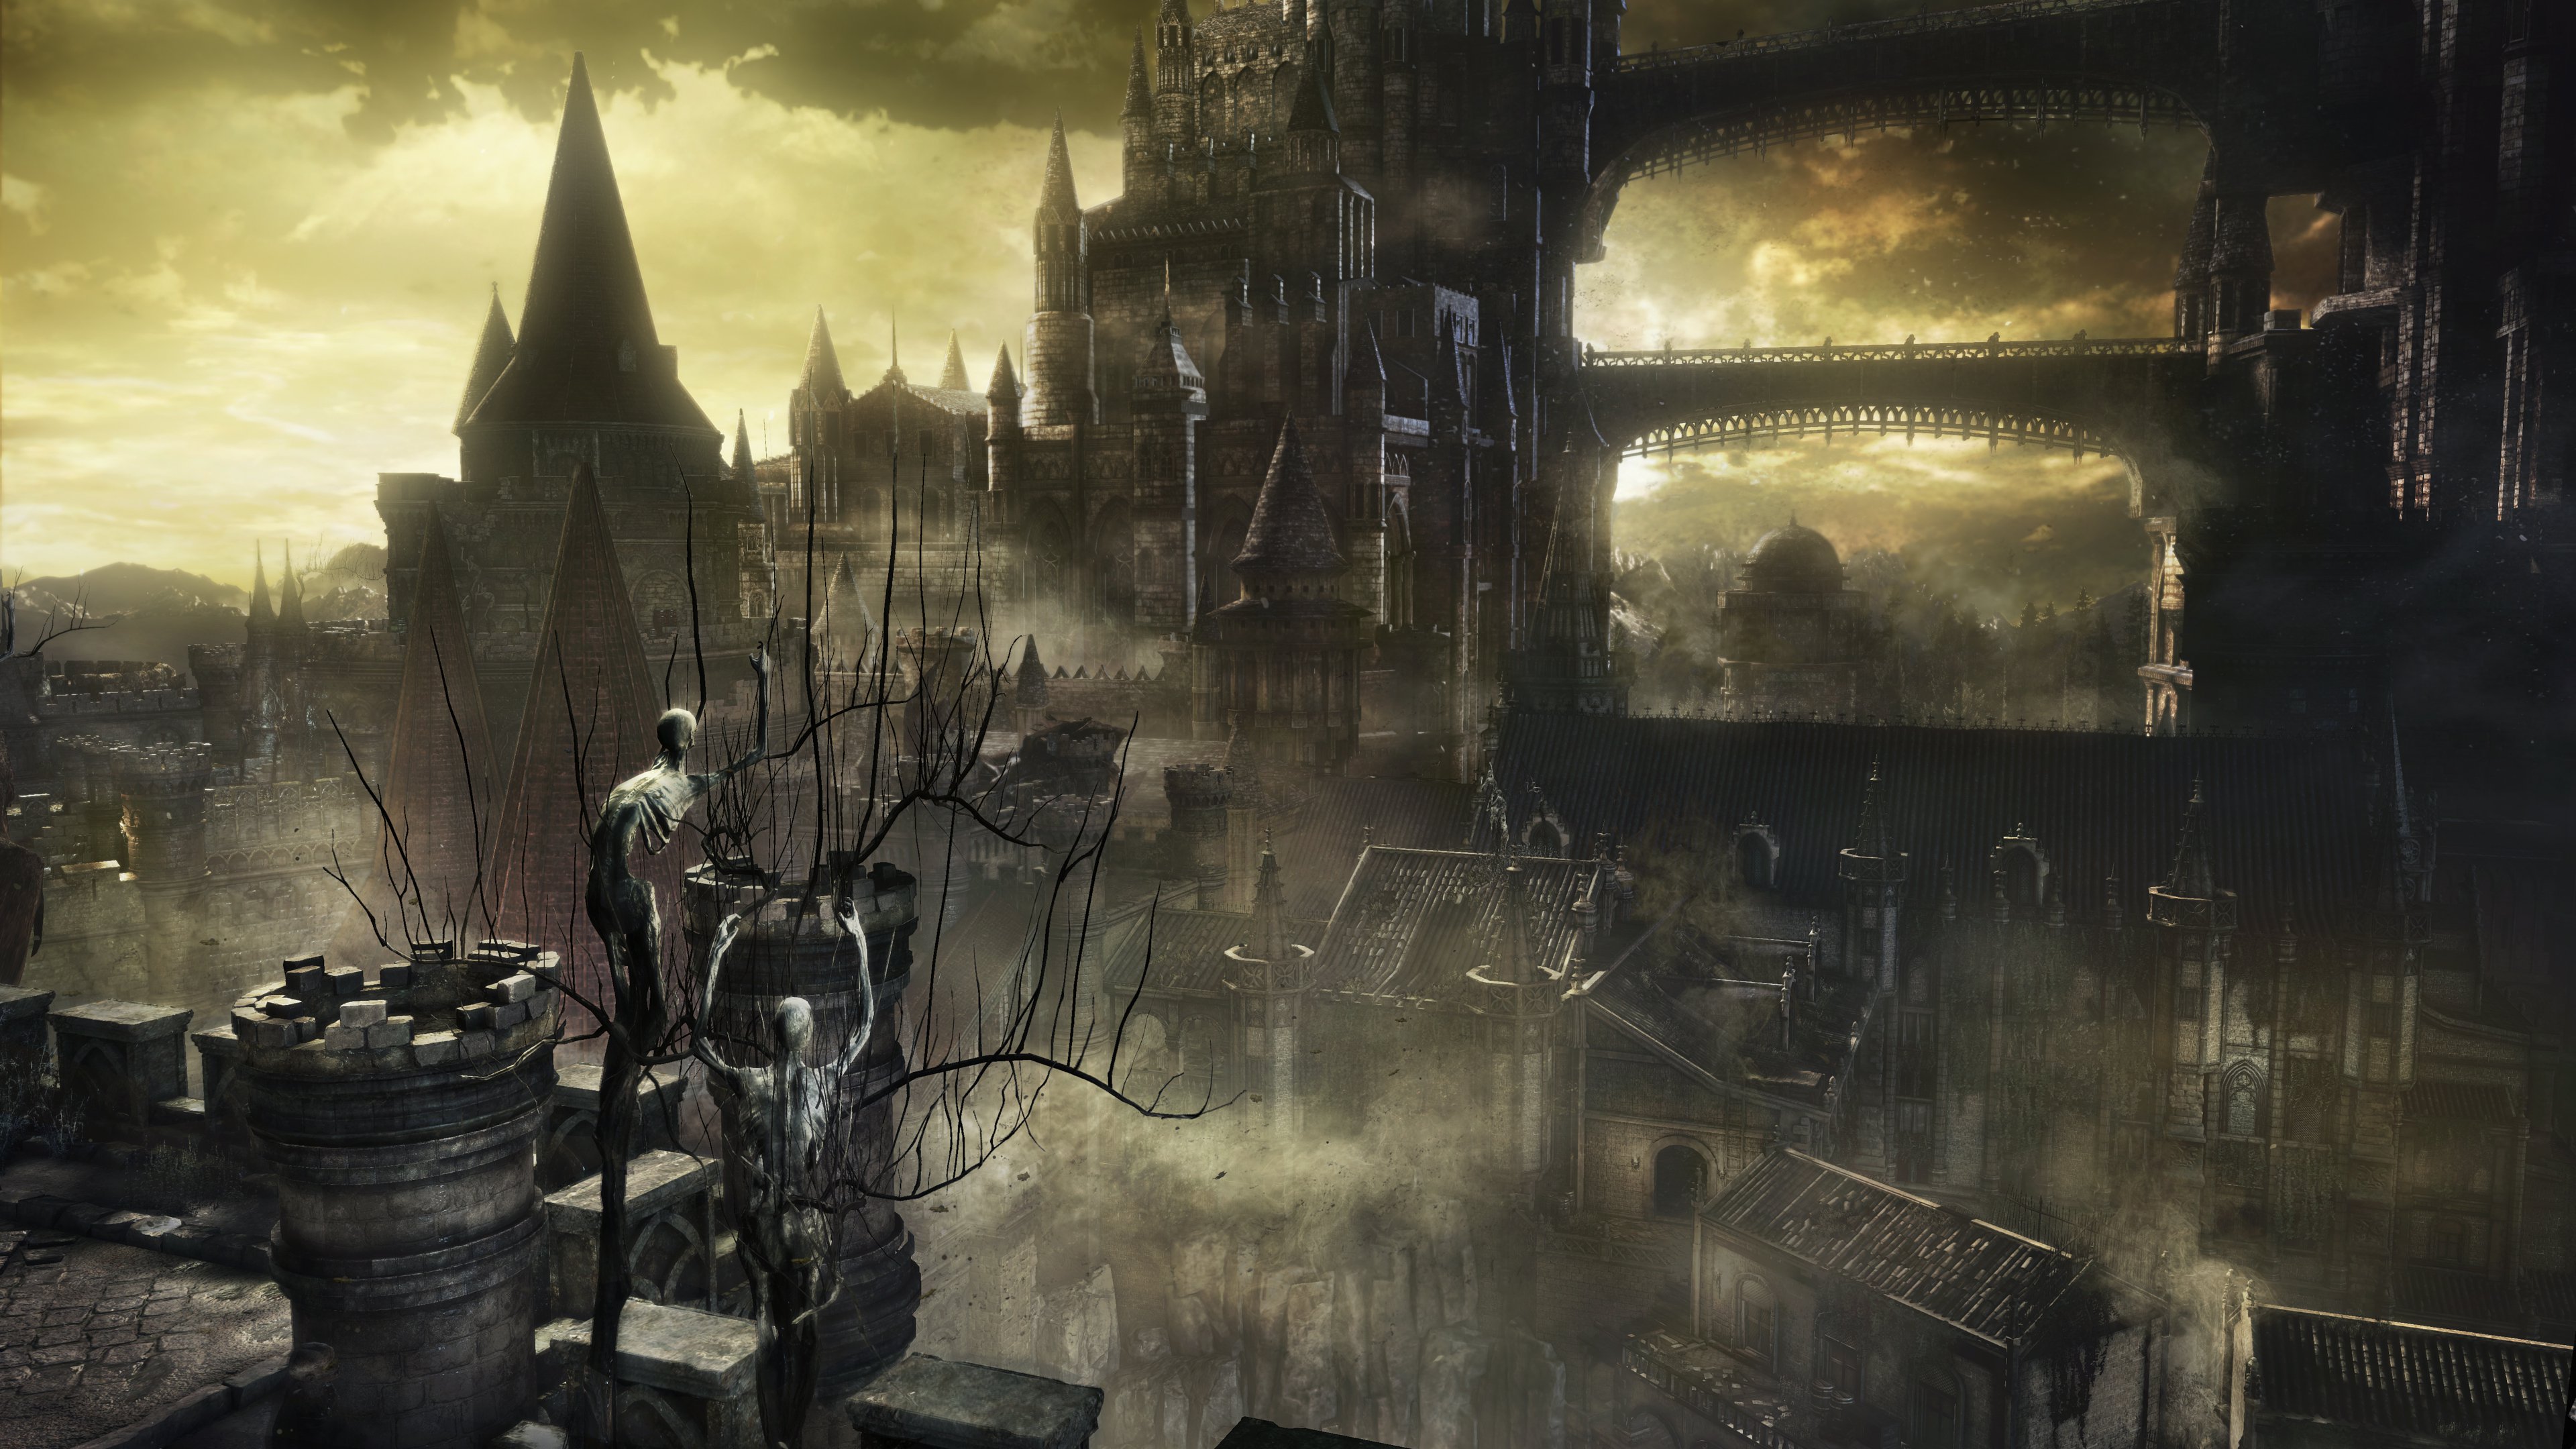 Dark Souls III Backgrounds on Wallpapers Vista